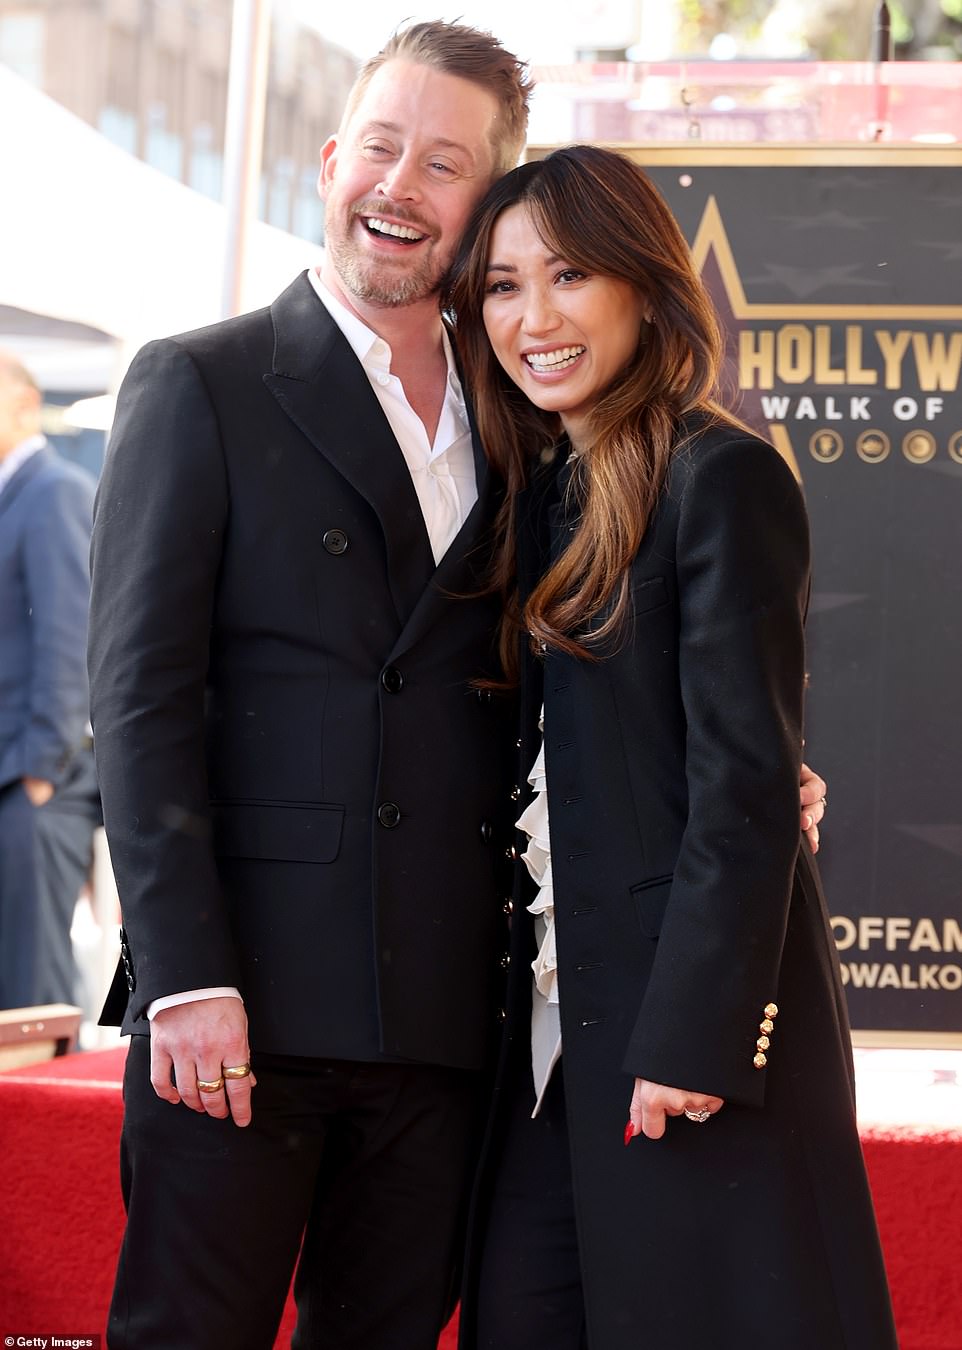 Das bezaubernde Paar posierte für Fotos seines Hollywood Walk of Fame-Stars